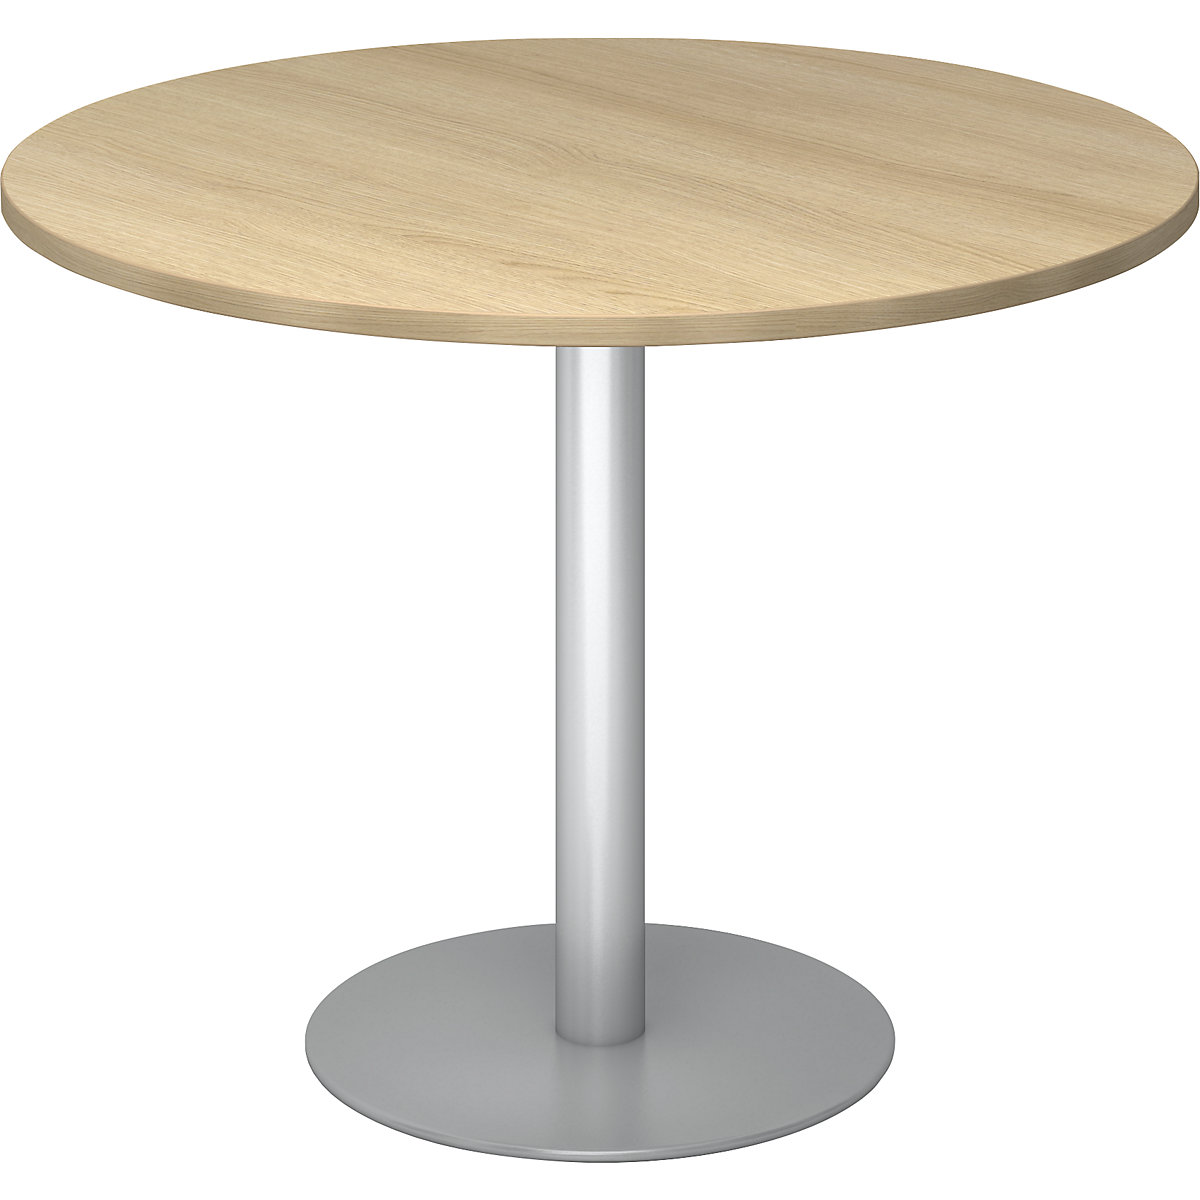 Jednací stůl, Ø 1000 mm, výška 755 mm, stříbrný podstavec, deska dubový dekor